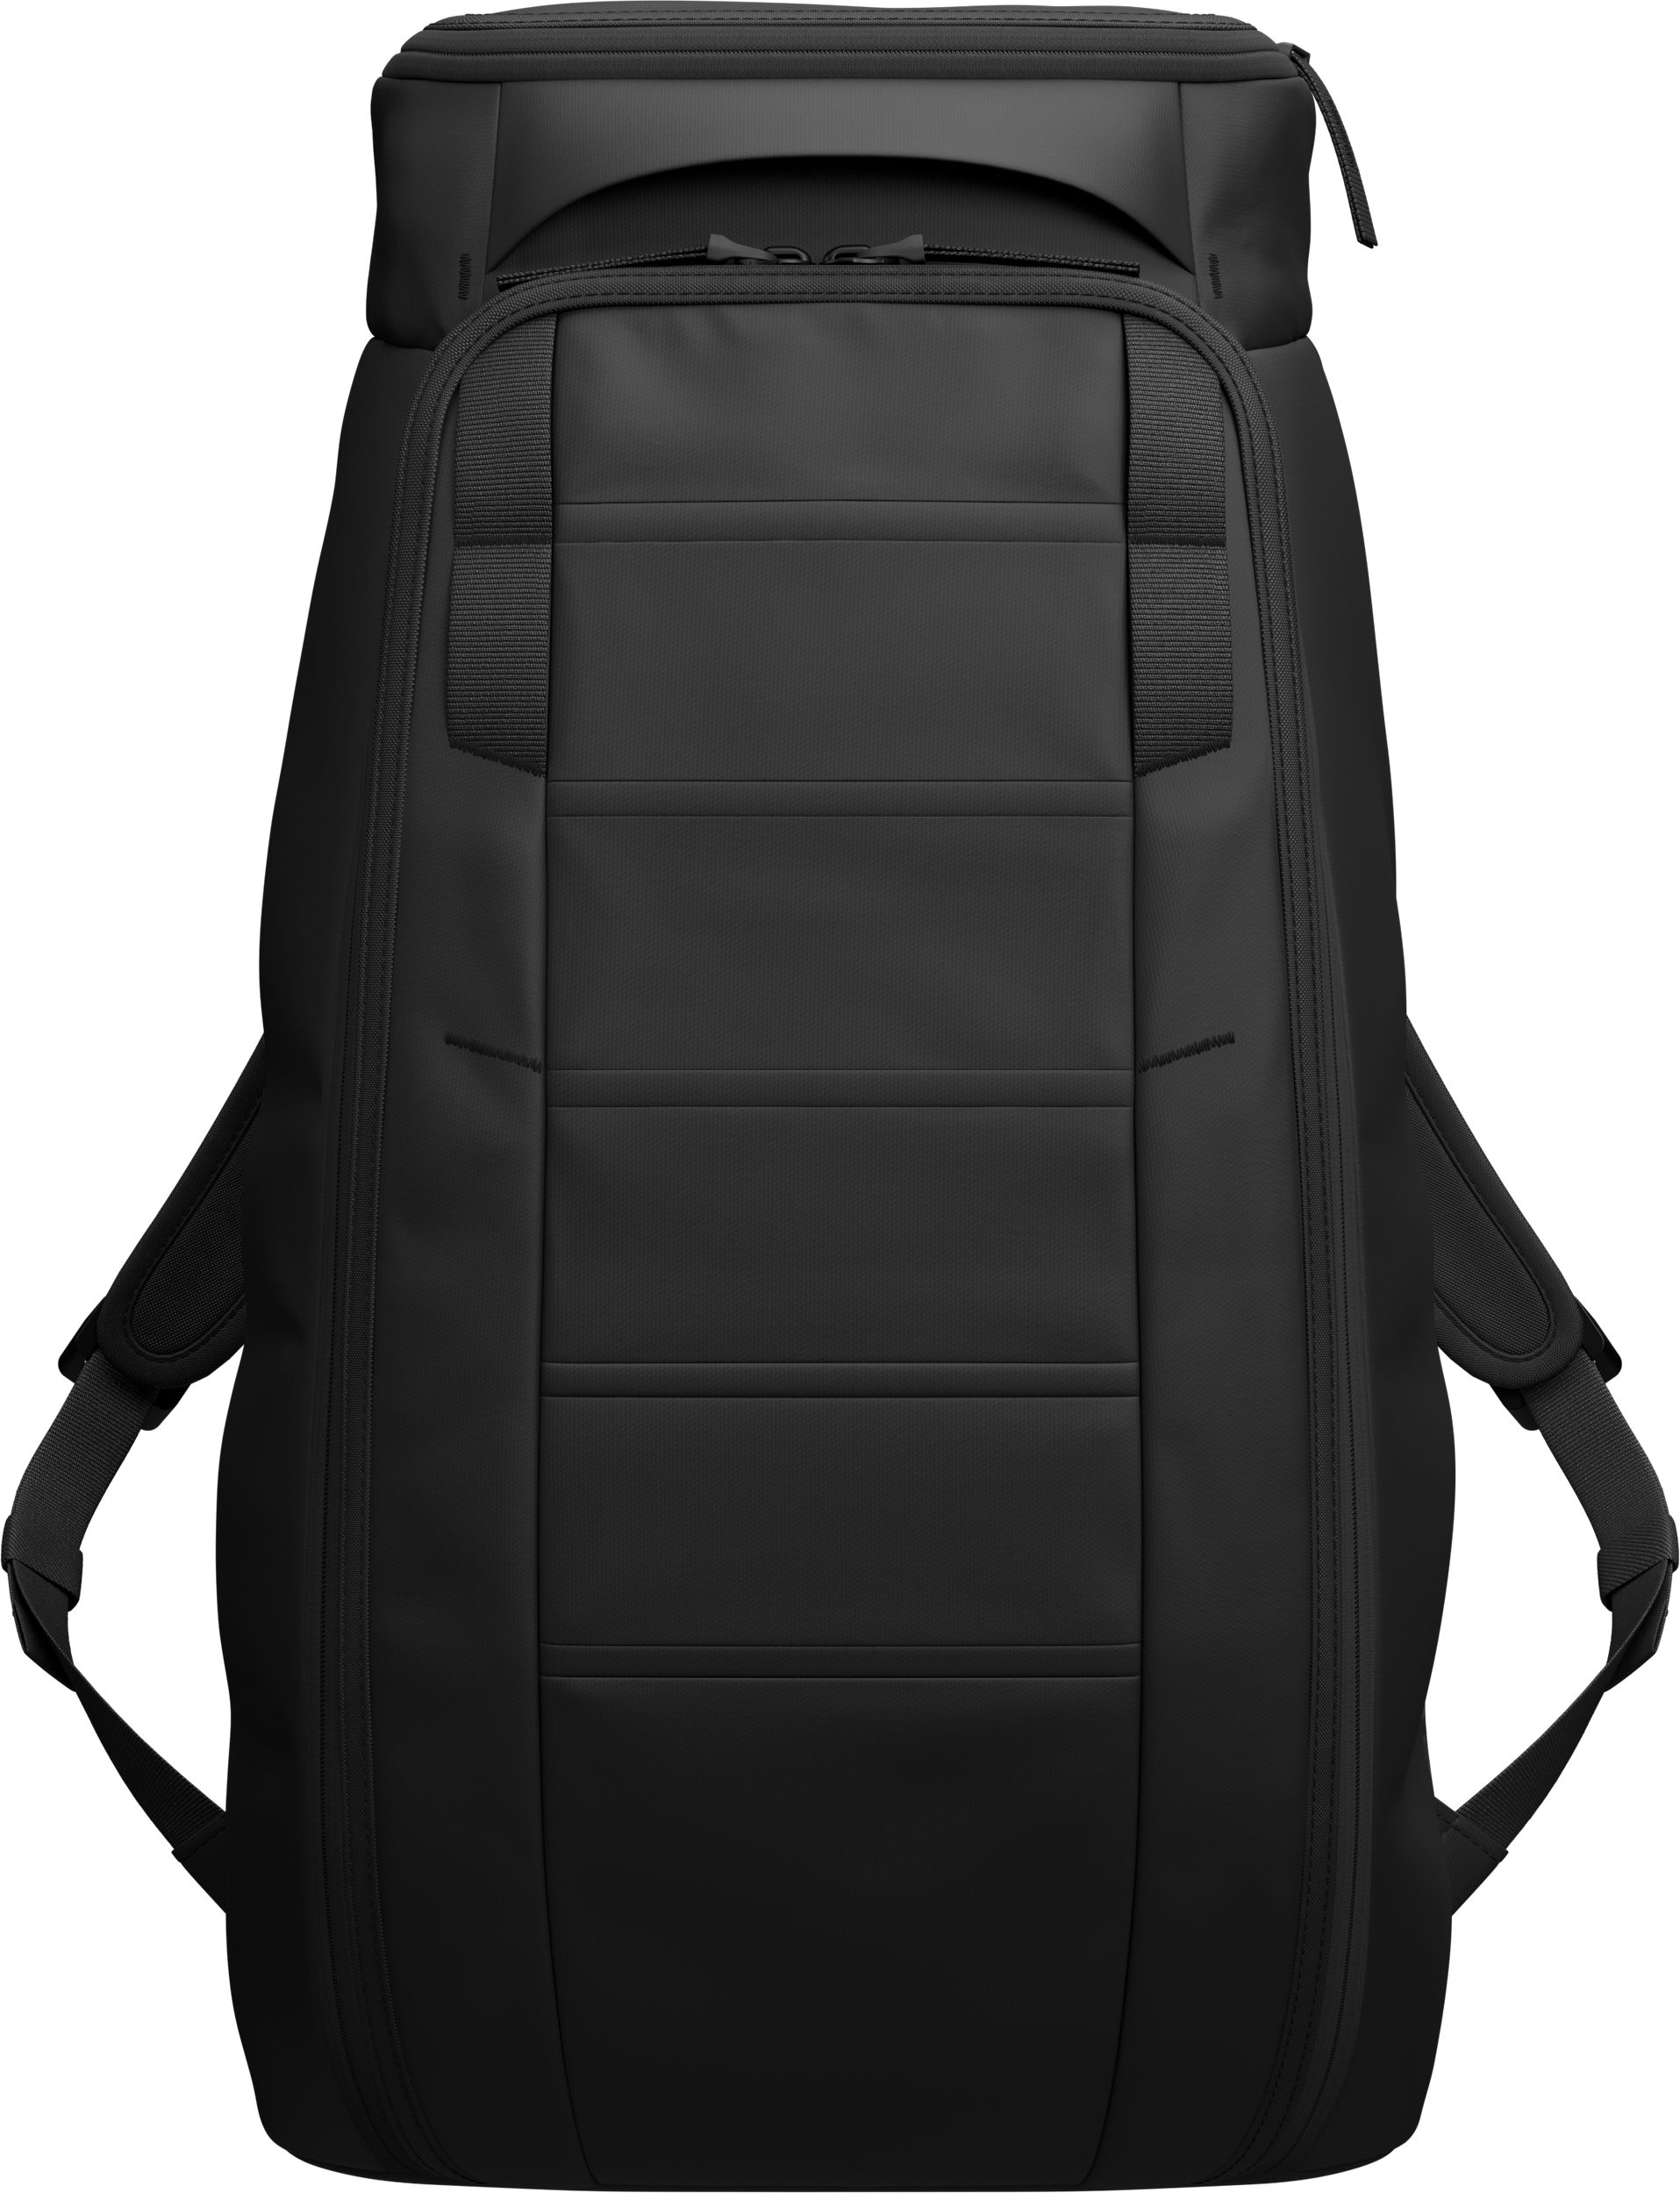 DB, Hugger Backpack 25L